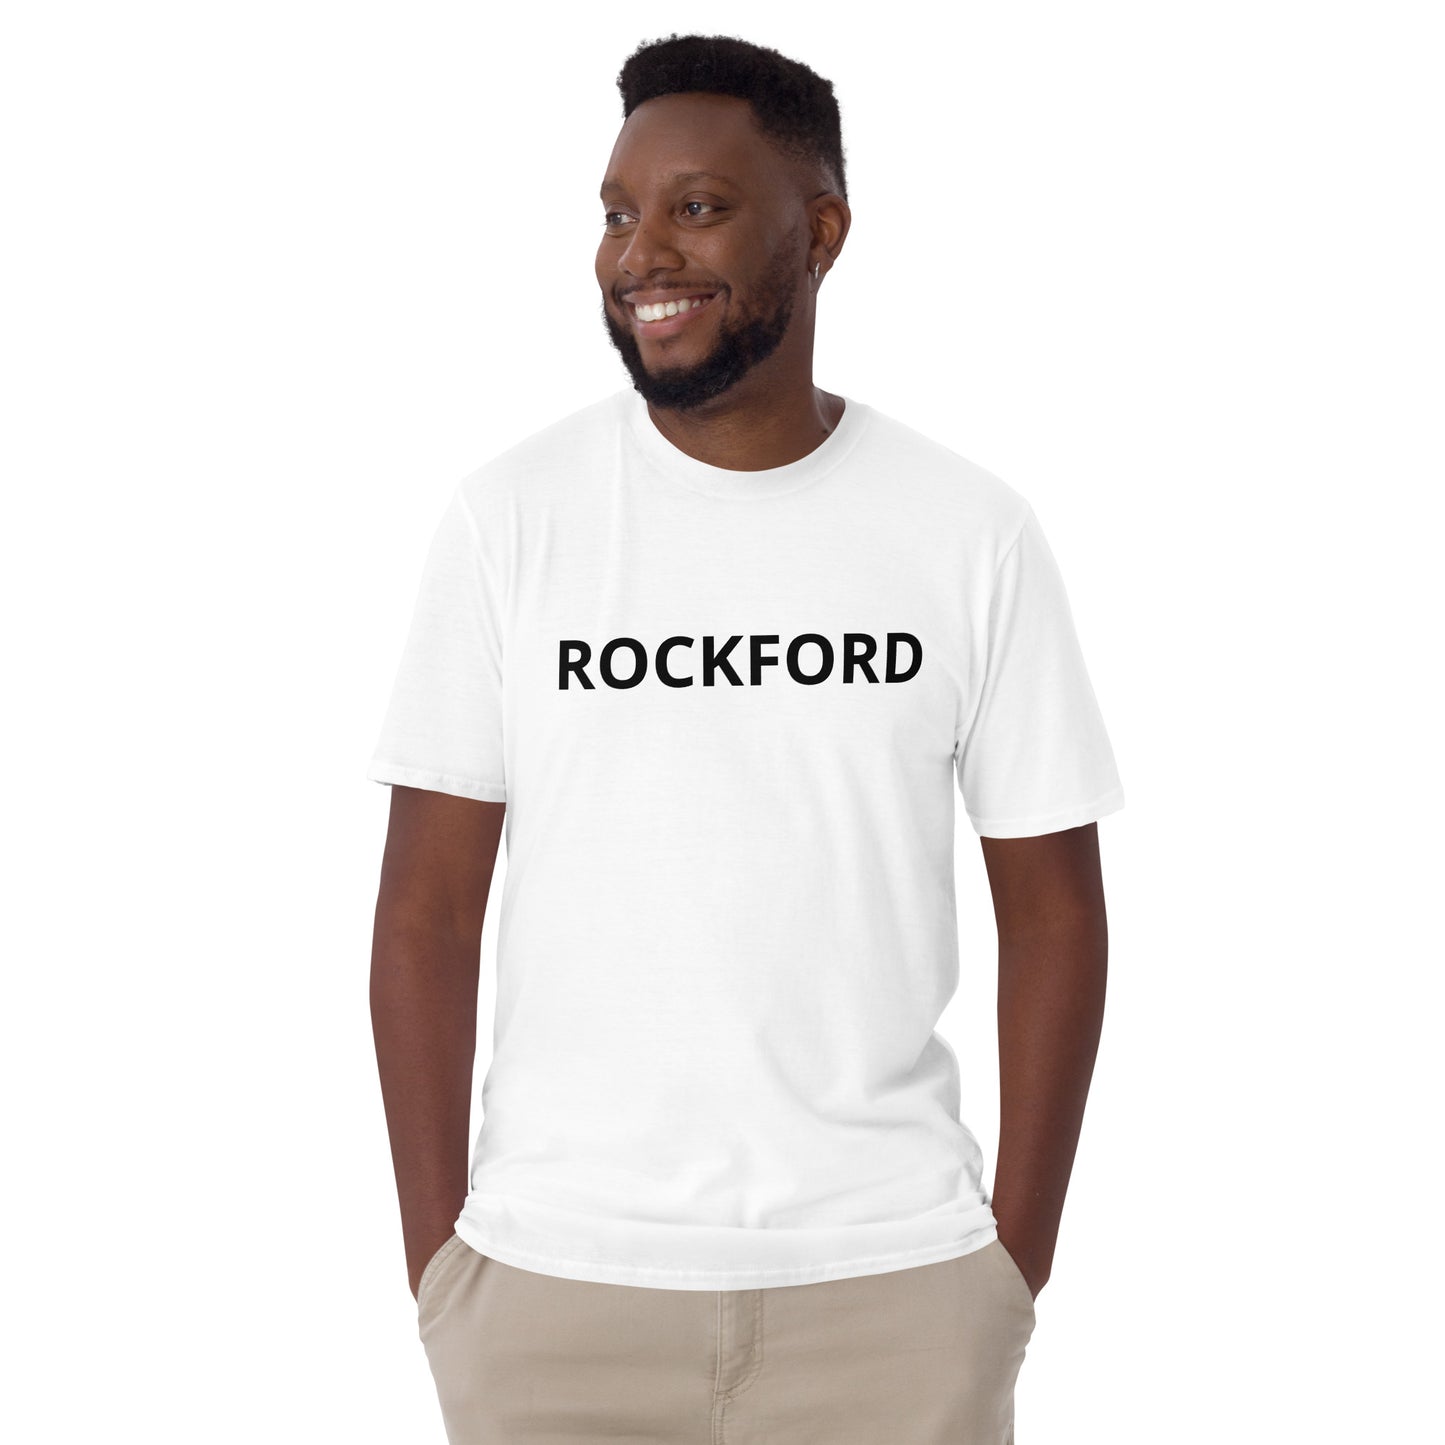 “ROCKFORD” T-Shirt